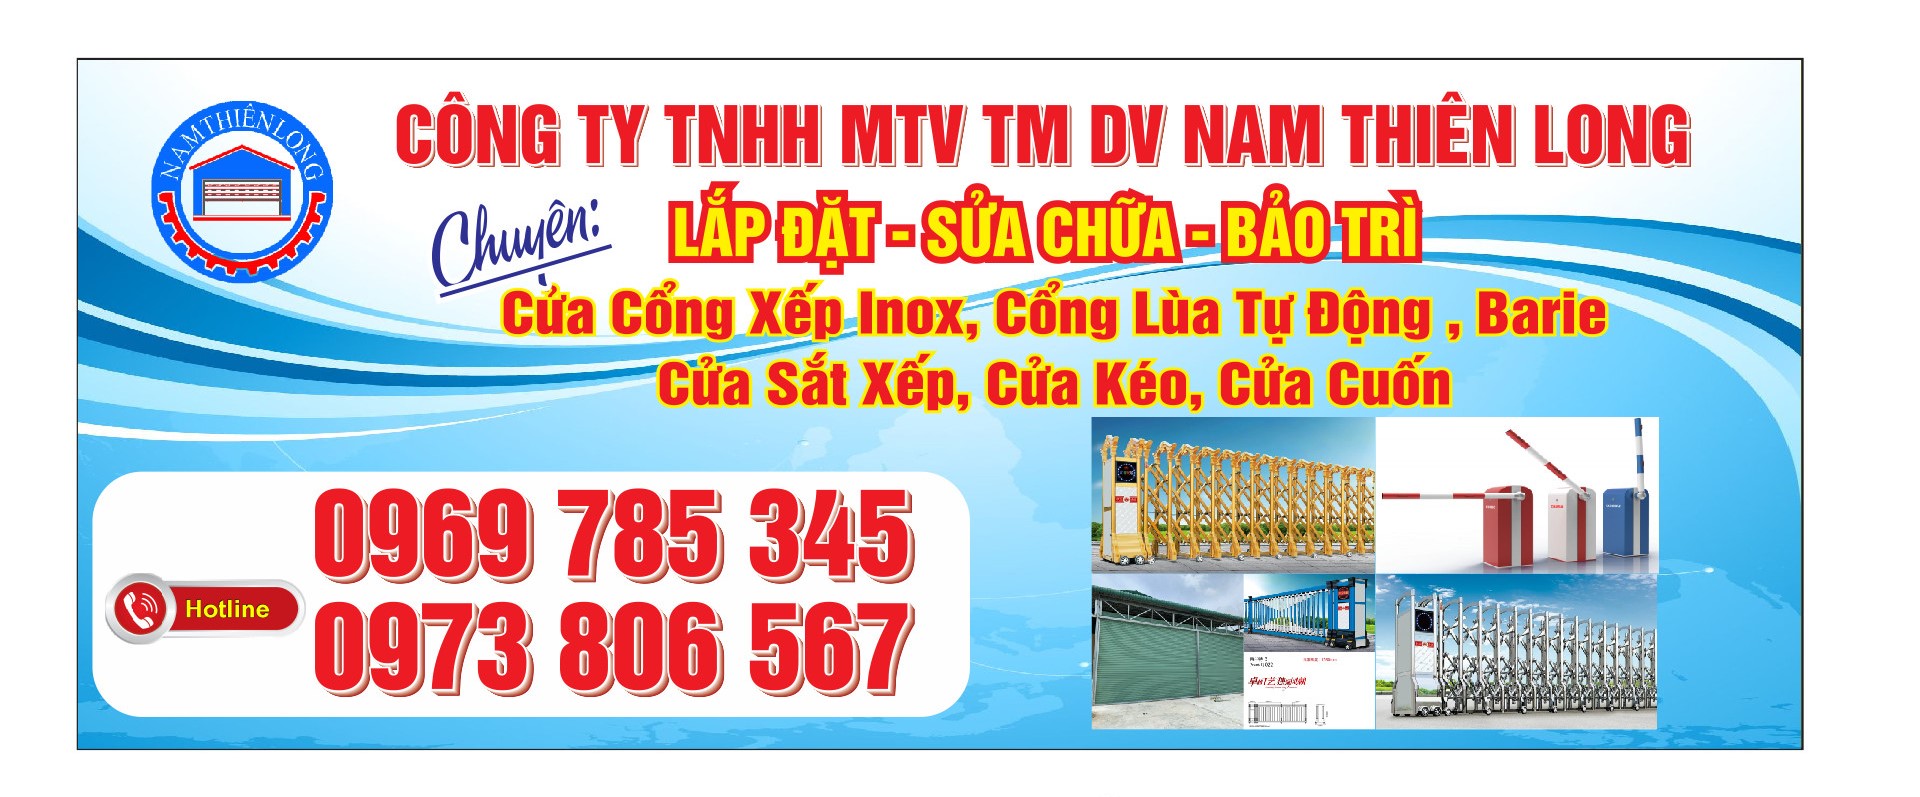 z2180141115594 aa3a144a68c781b347d9b8c7558e9275 - Lắp đặt cửa cổng xếp tại KCN Việt Hương